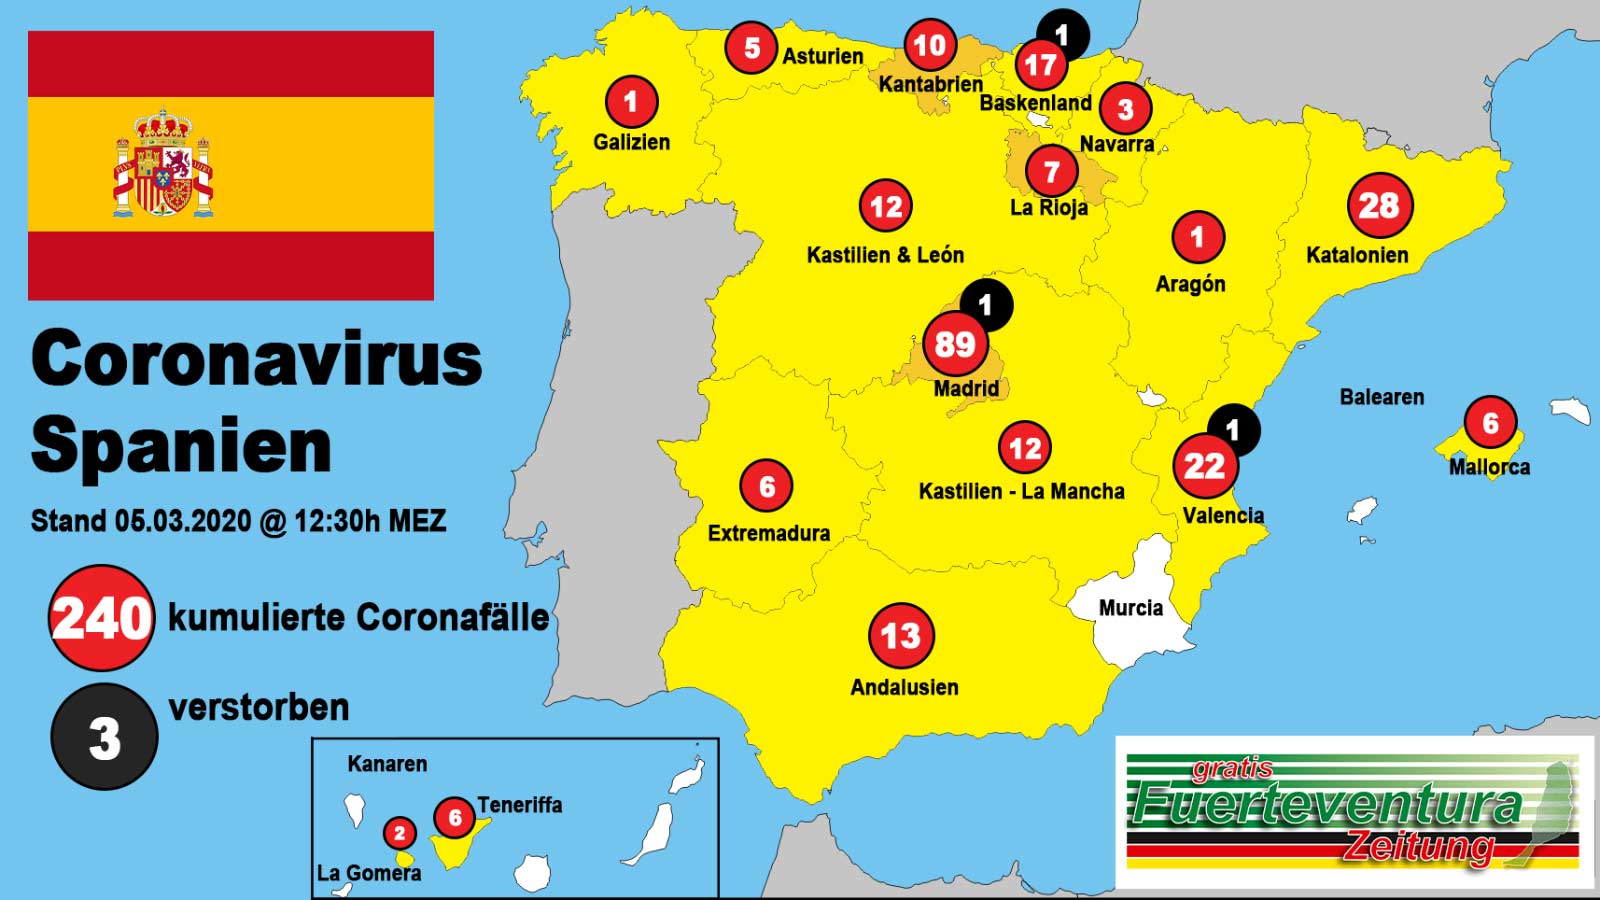 Spanien / Spanien Wikipedia / Spanien ist eines der beliebtesten urlaubsländer für die deutsche bevölkerung.